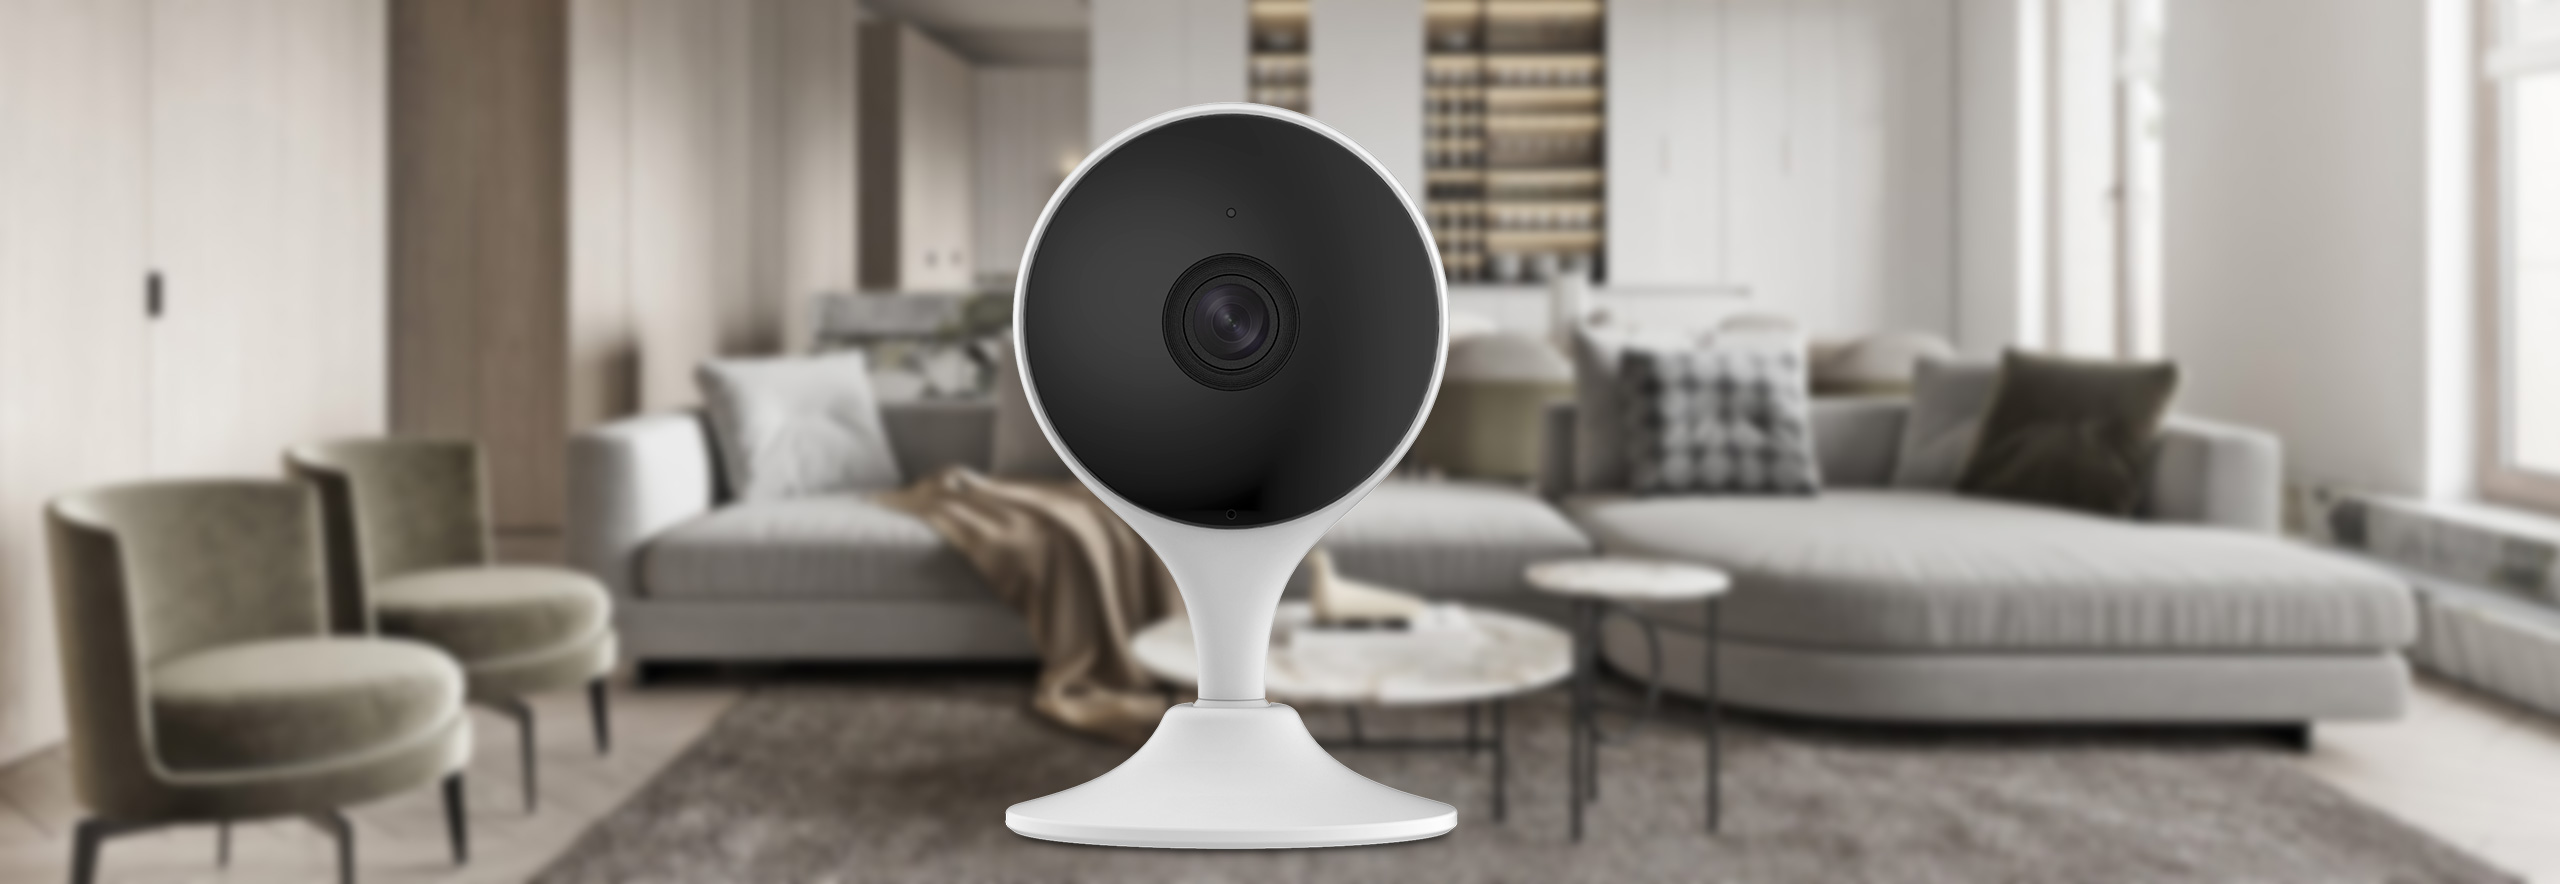 Come scegliere la migliore telecamera di sorveglianza interna per la tua casa